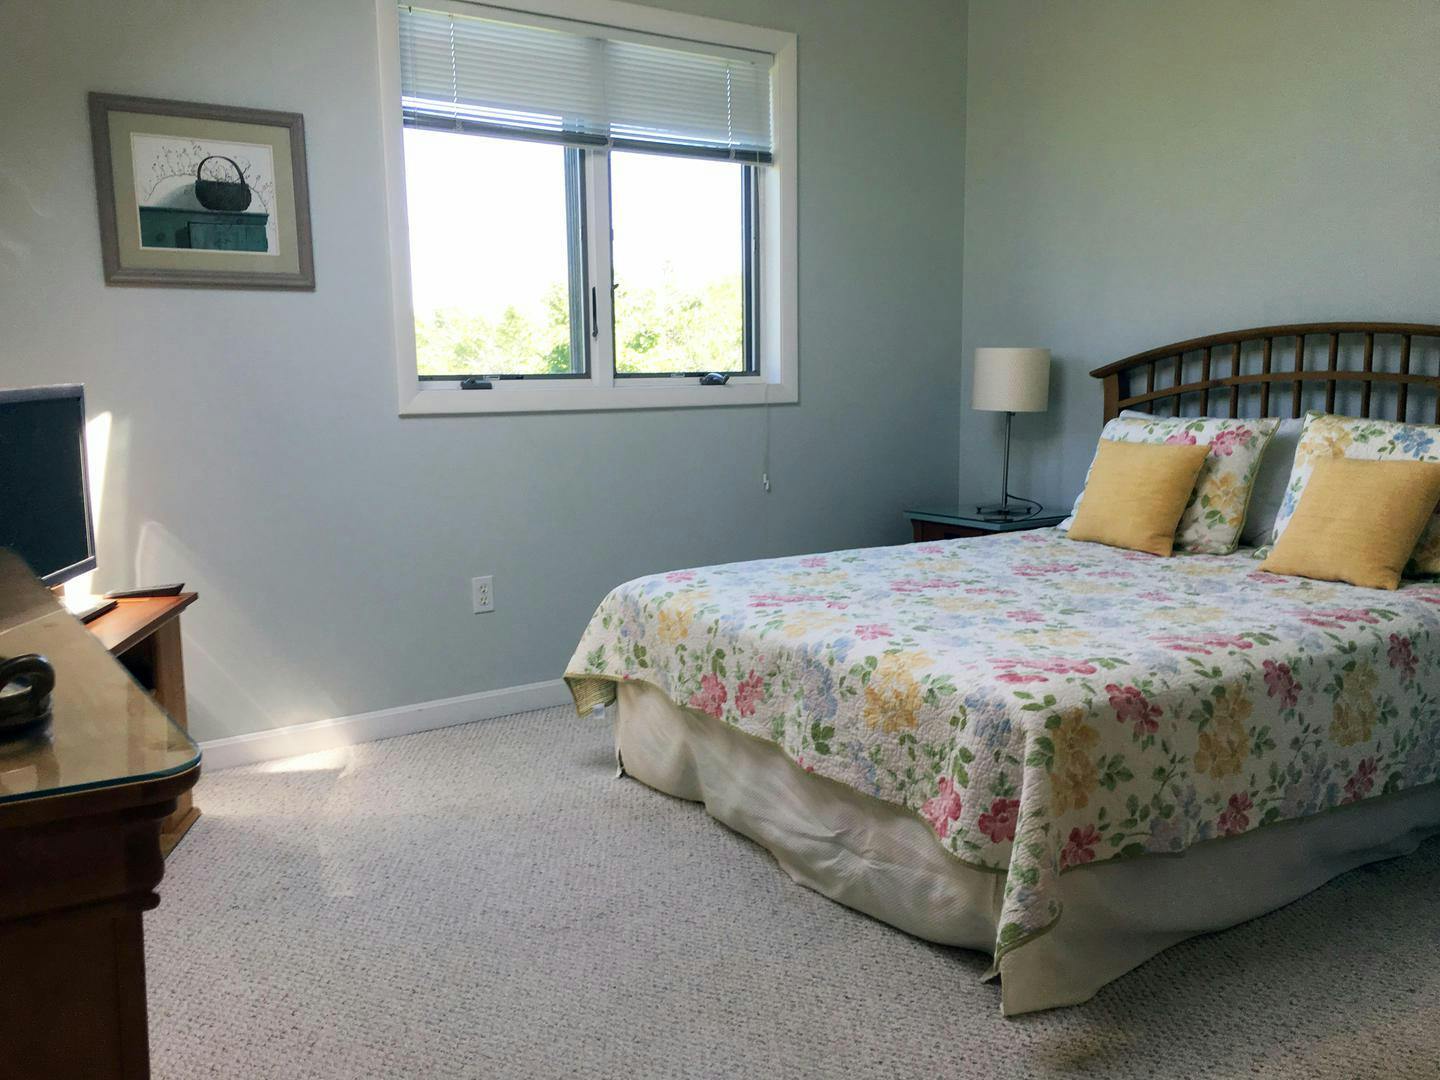 Image 2 - 4 Bedroom Rental in Edgartown, Katama - Sleeps 8